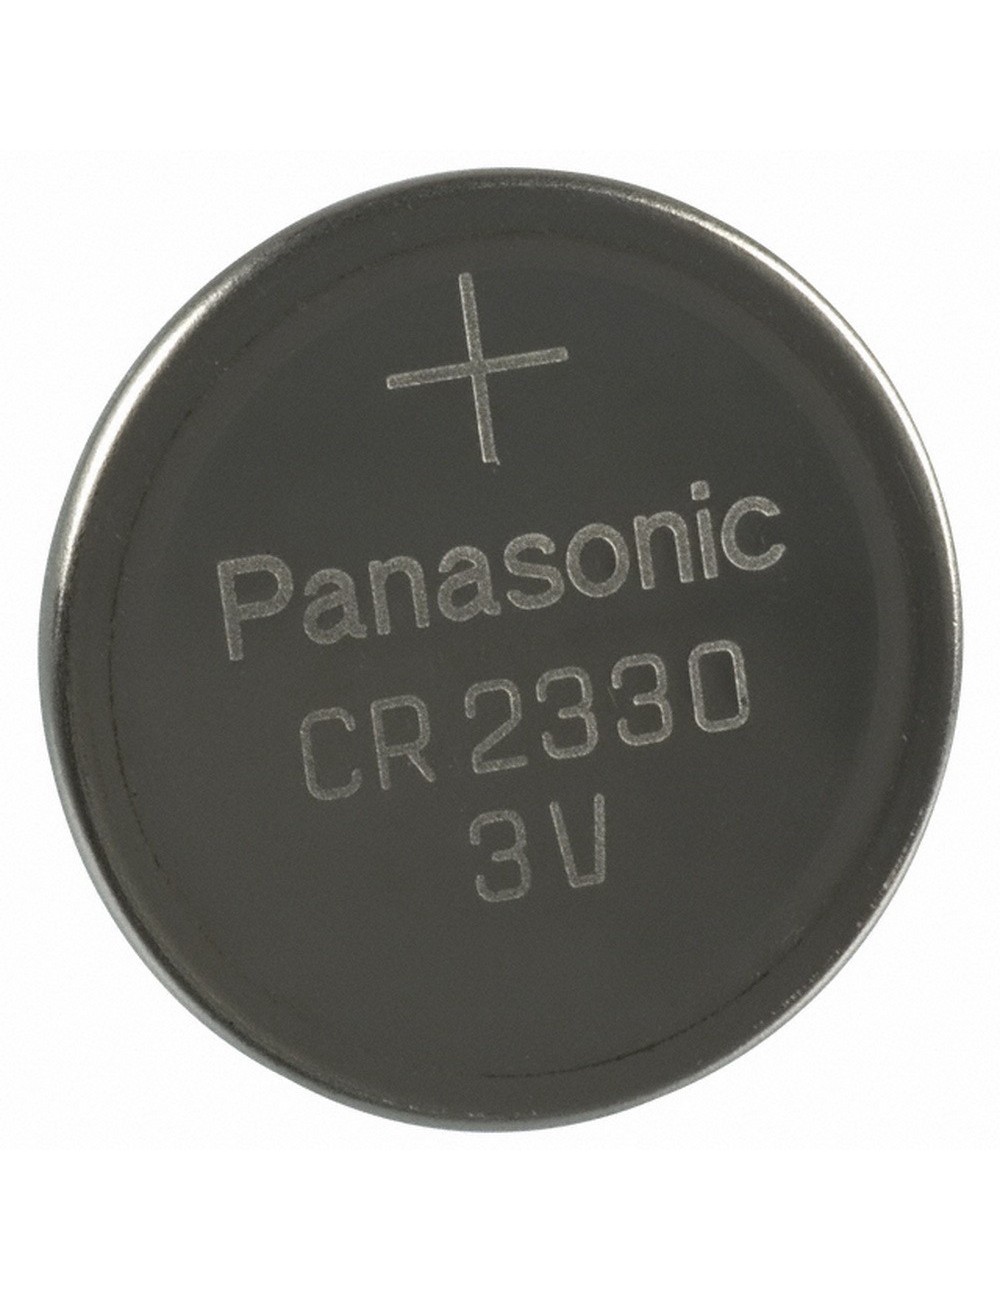 Lithium knoopcel CR2330 3V 265mAh (Panasonic)